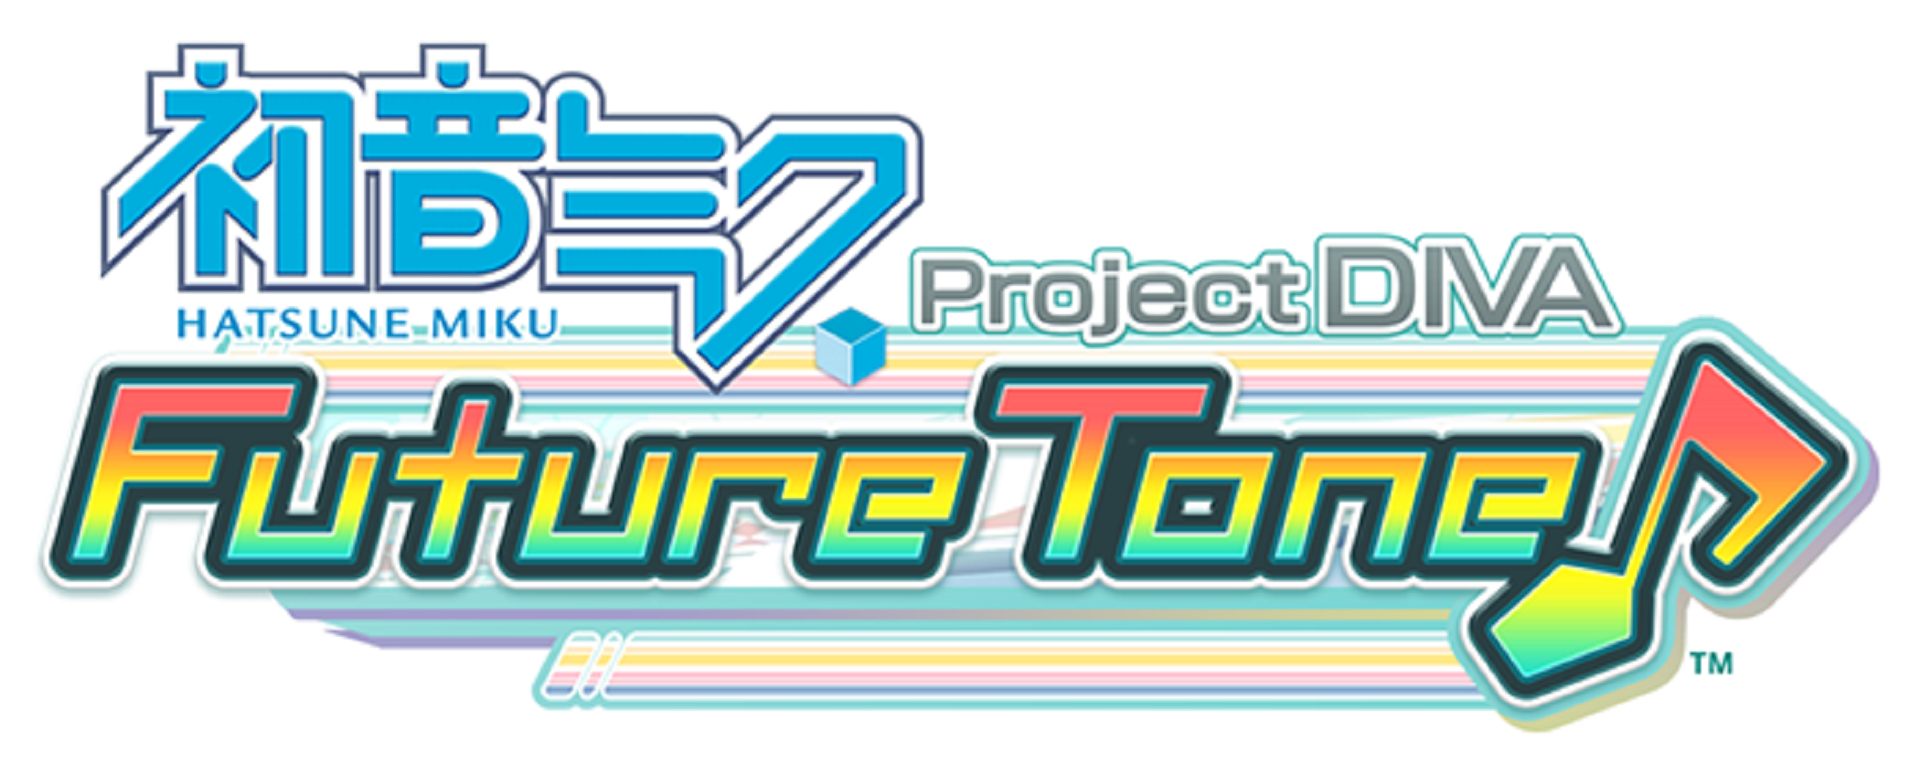 Hatsune Miku: Project Diva Future Tone | Project Diva Wiki | Fandom